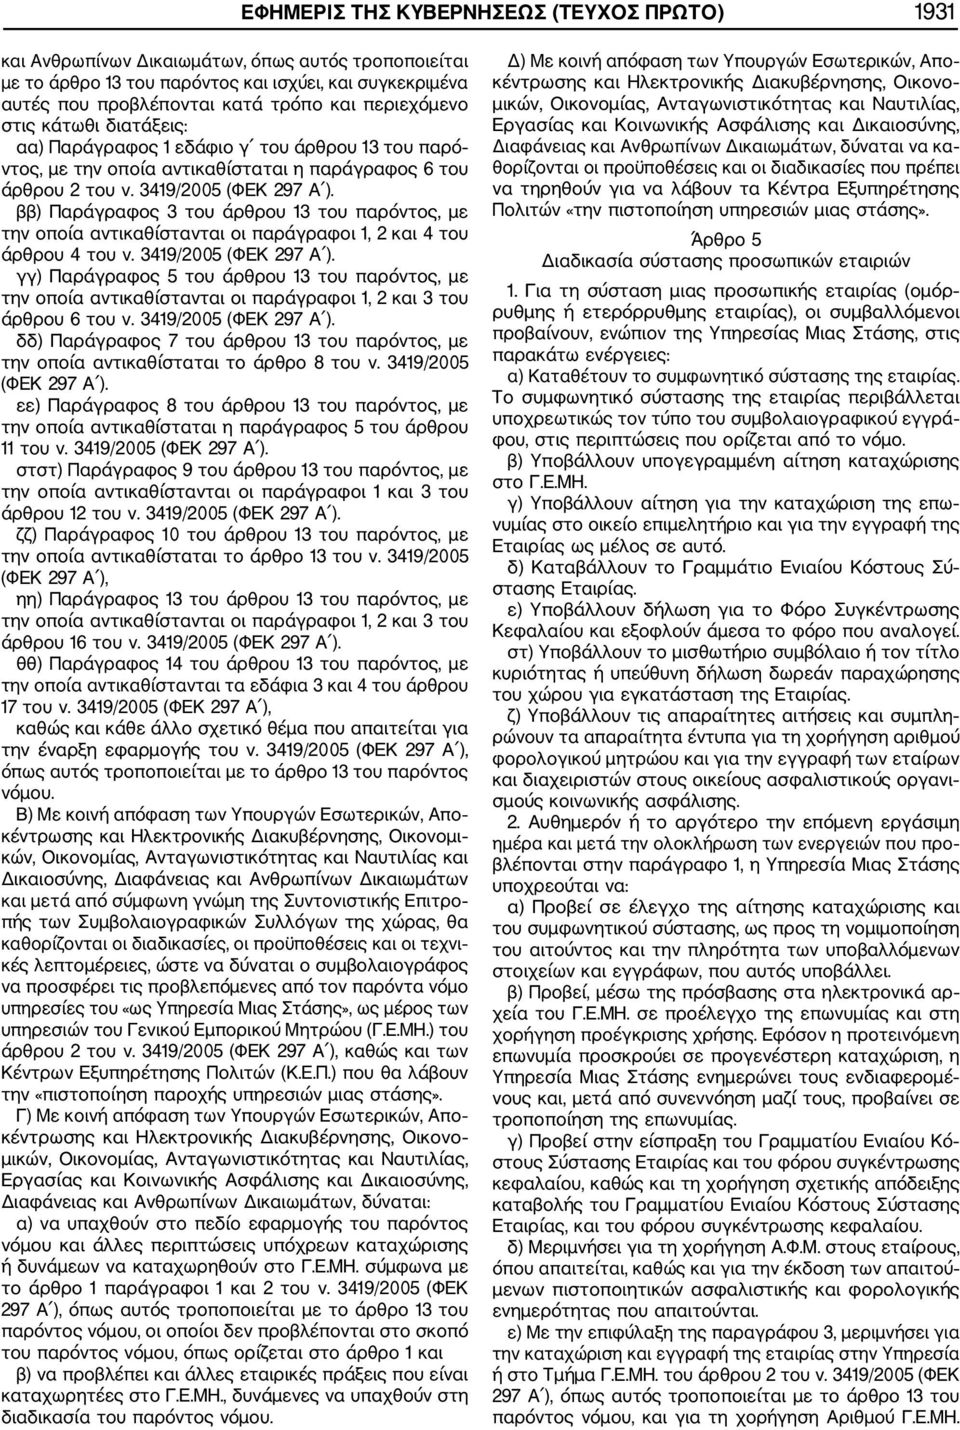 ββ) Παράγραφος 3 του άρθρου 13 του παρόντος, με την οποία αντικαθίστανται οι παράγραφοι 1, 2 και 4 του άρθρου 4 του ν. 3419/2005 (ΦΕΚ 297 Α ).